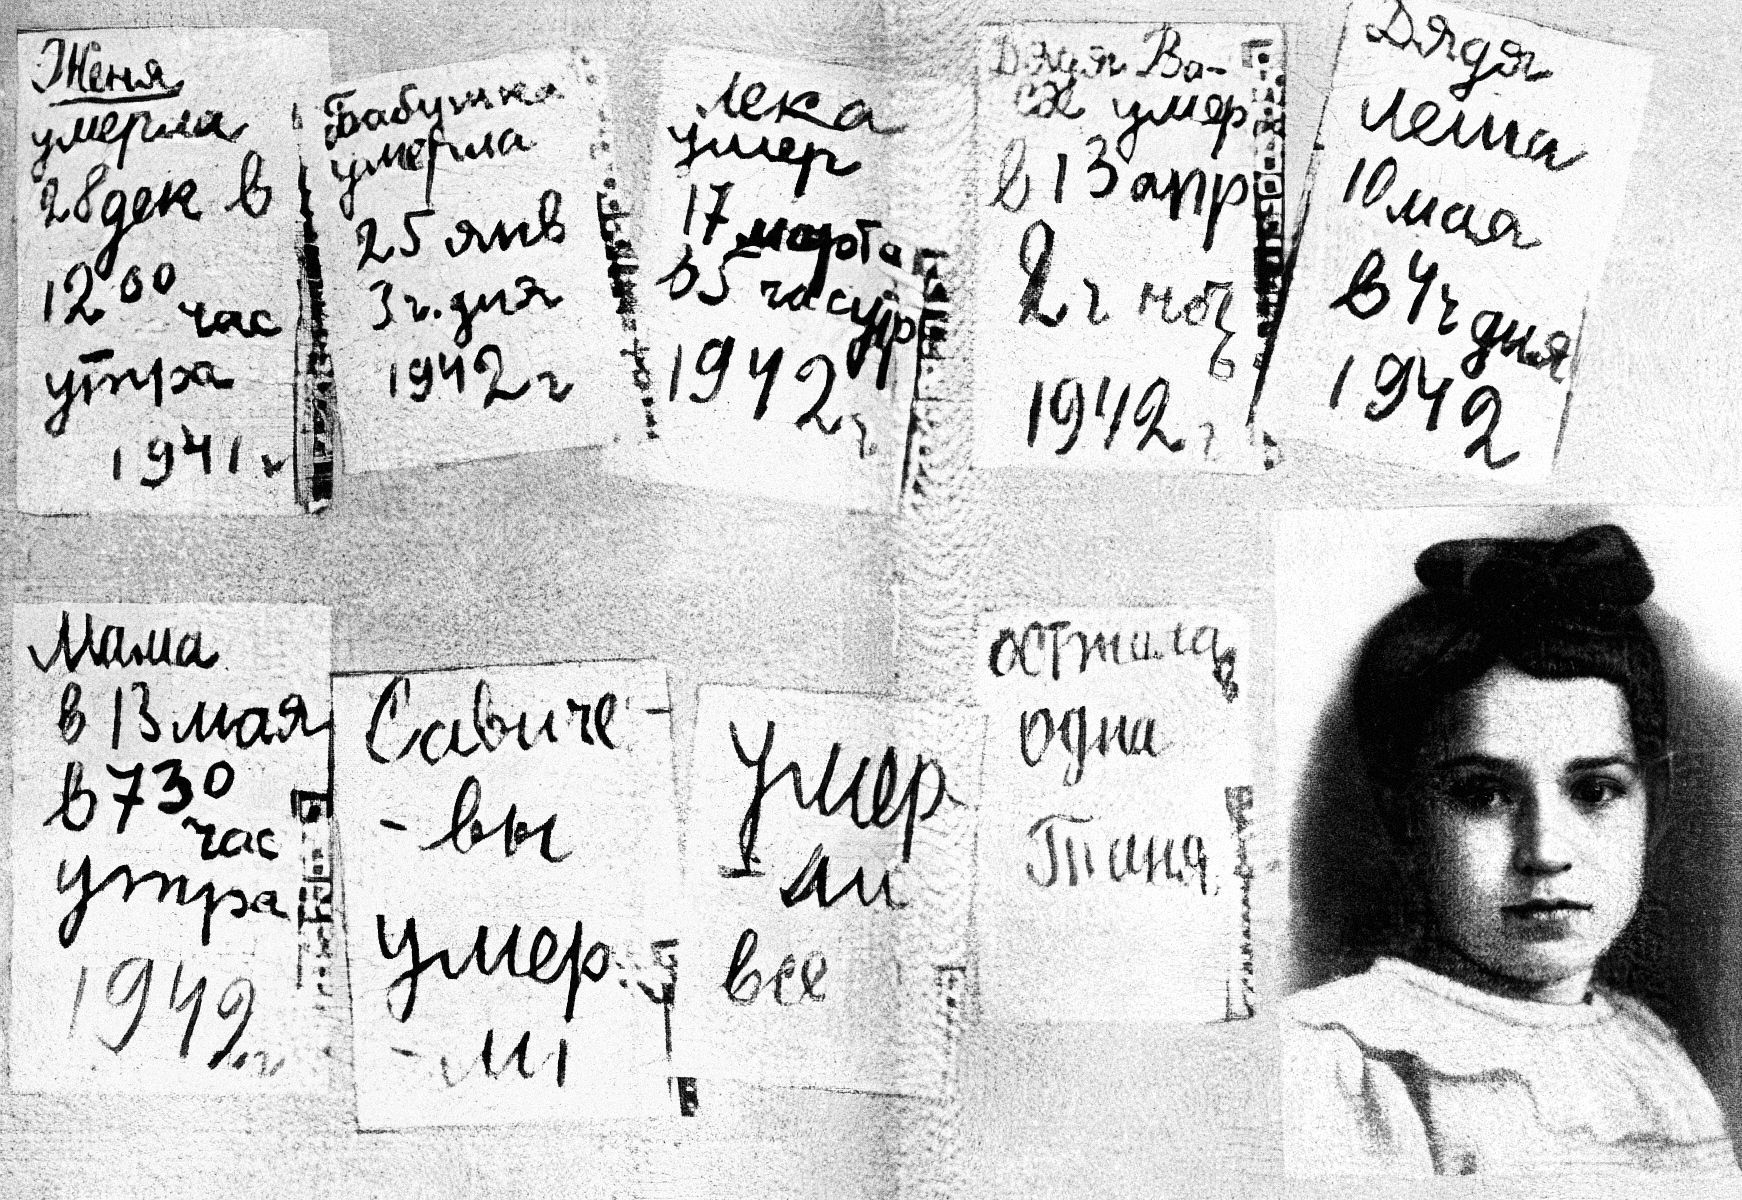 Jednorázové užití / Fotogalerie / Uplynulo 80 let od krvavého obležení Leningradu, která si vyžádala přes milion životů / Leningrad / Druhá světová válka / Obležení / Blokáda